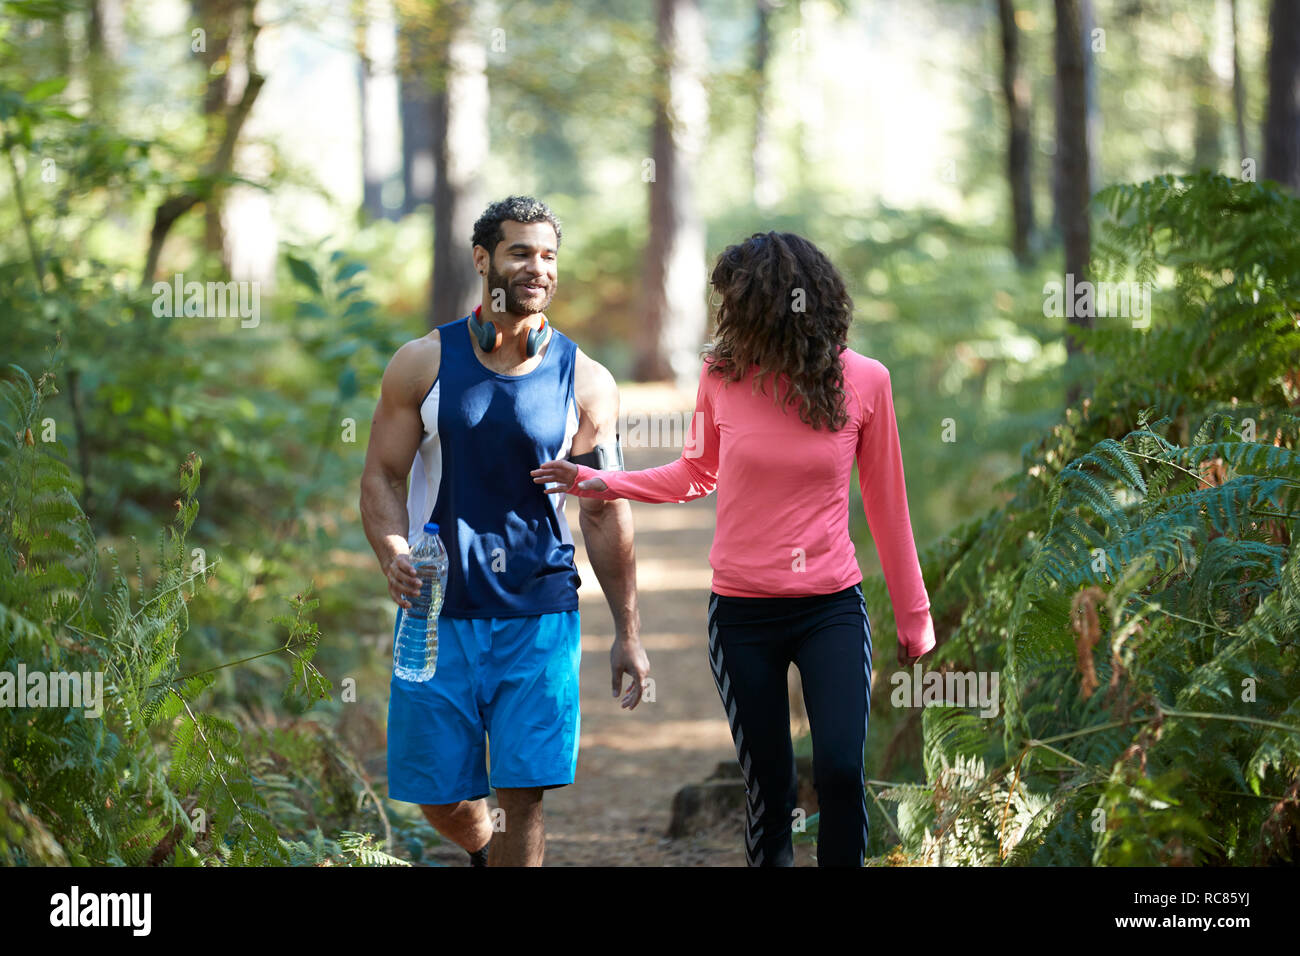 Männlichen und weiblichen Läufern teilen Mineralwasser im Wald Stockfoto